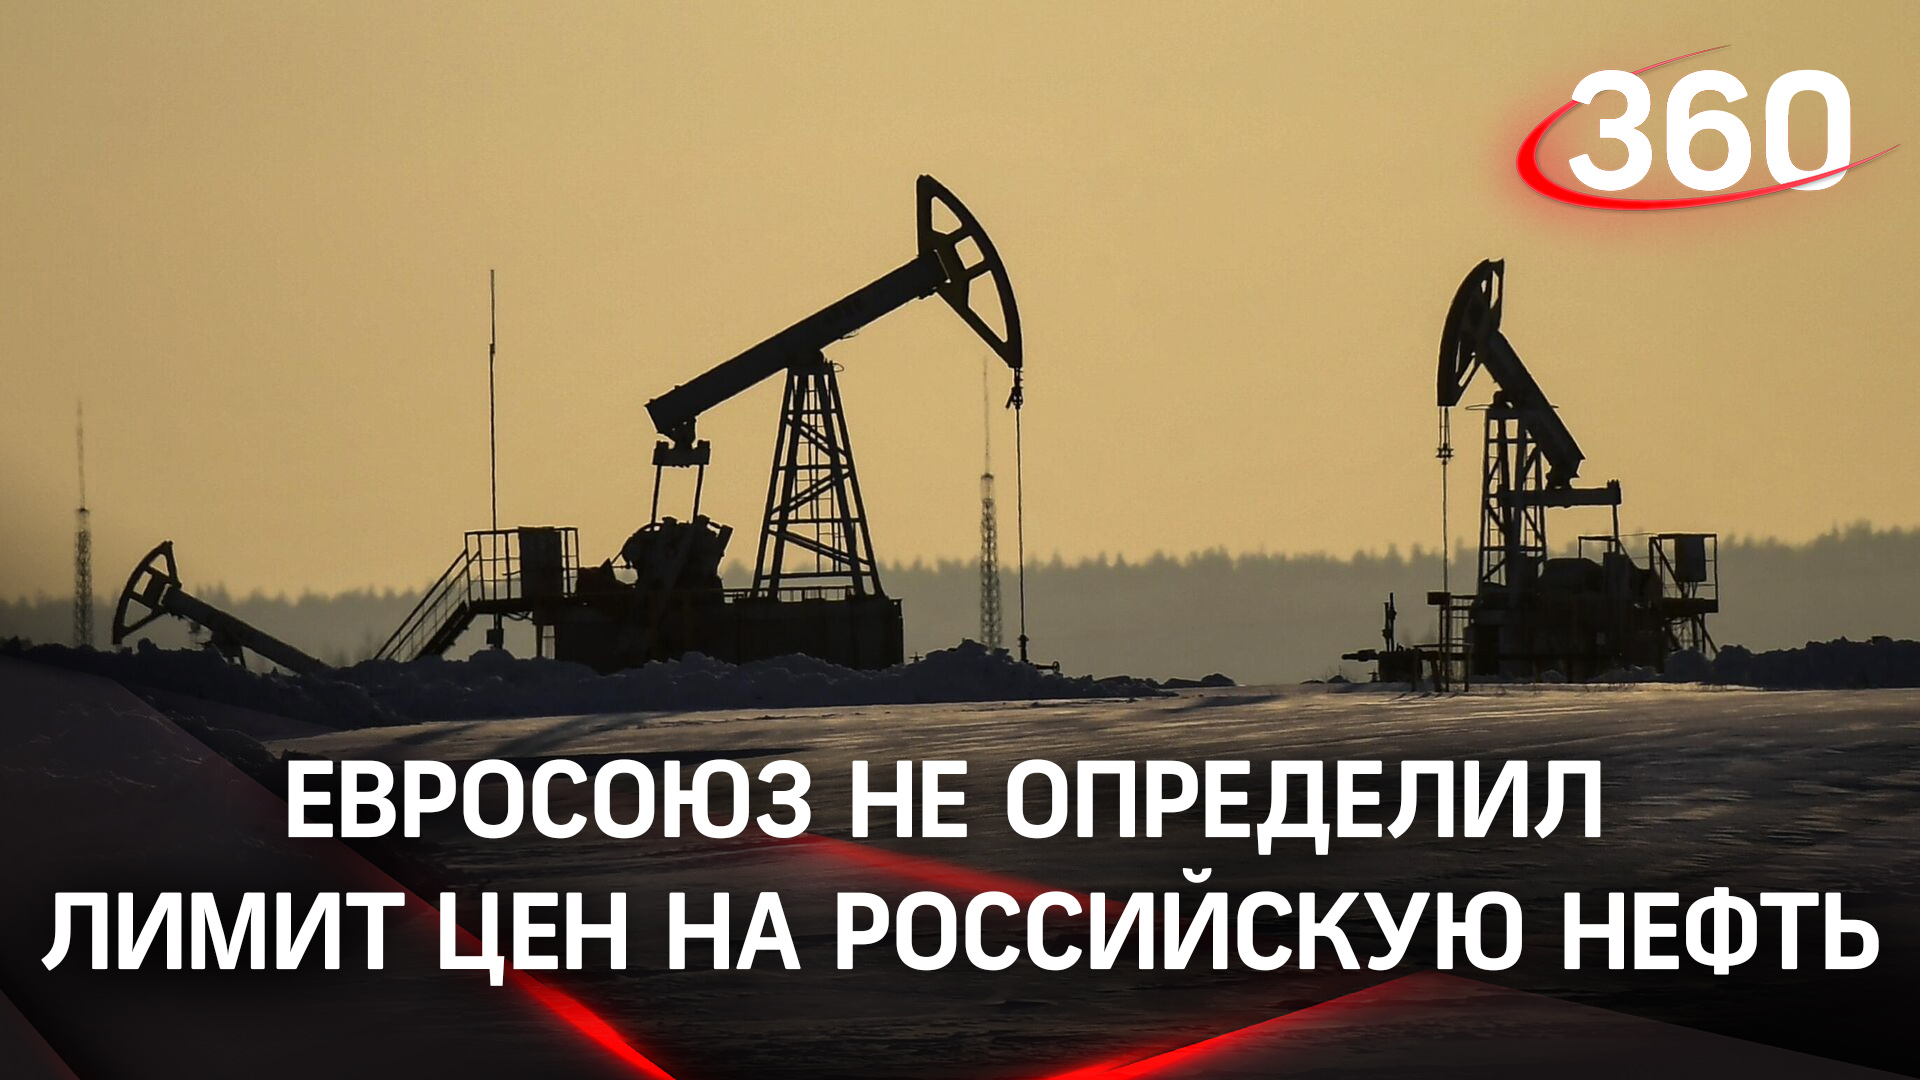 Вновь не договорились: Евросоюз не смог определиться с потолком цен на российскую нефть